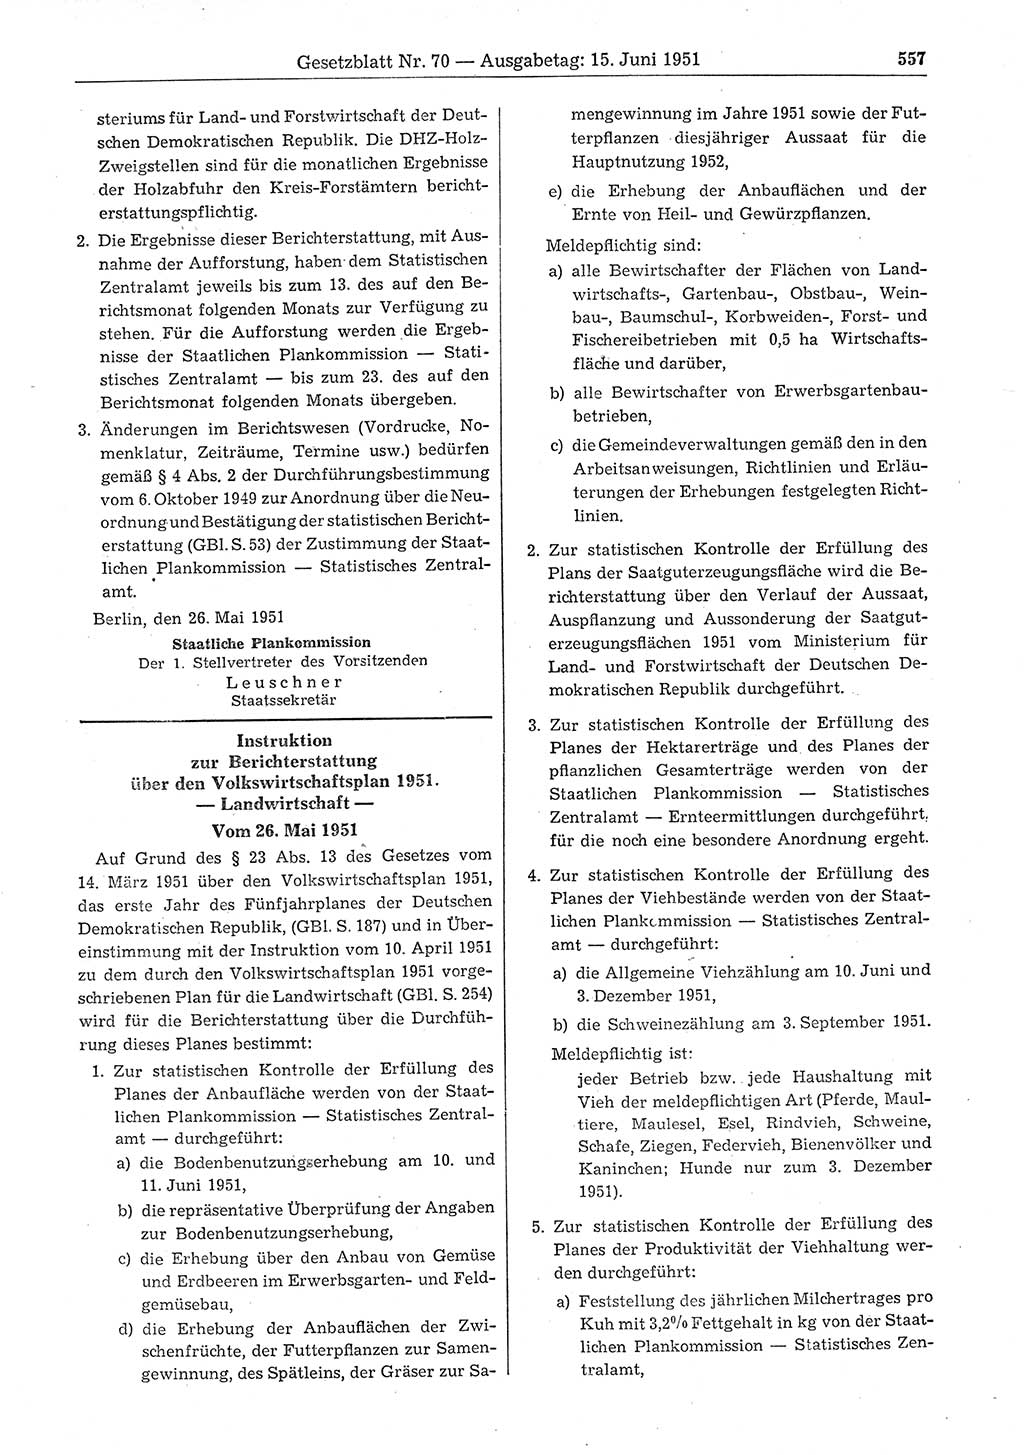 Gesetzblatt (GBl.) der Deutschen Demokratischen Republik (DDR) 1951, Seite 557 (GBl. DDR 1951, S. 557)